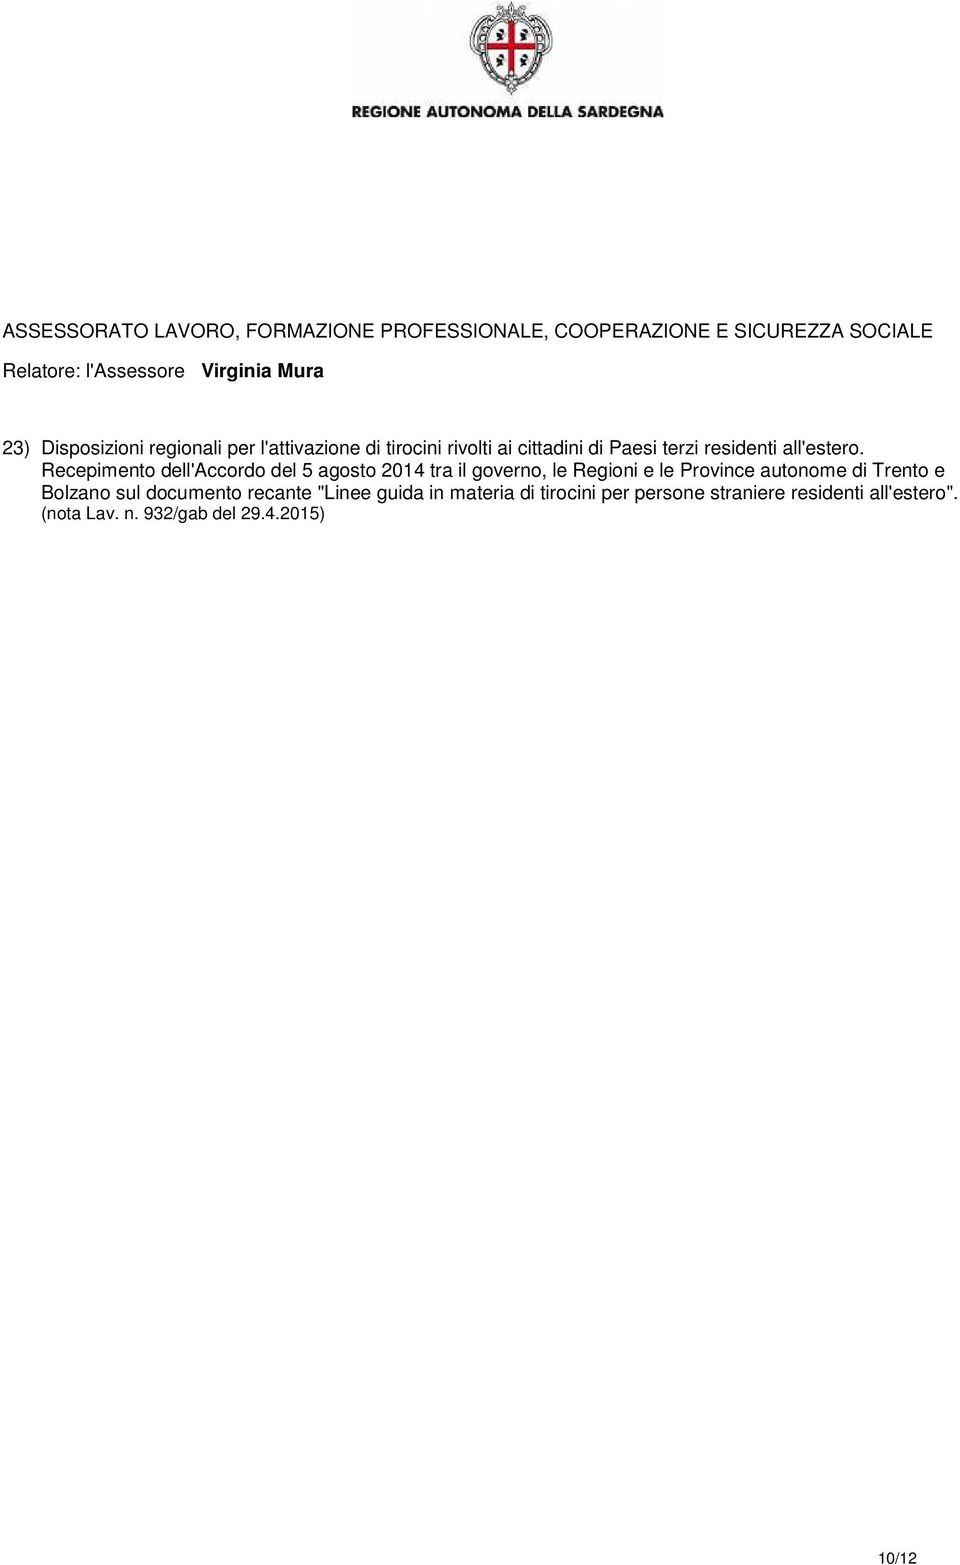 Recepimento dell'accordo del 5 agosto 2014 tra il governo, le Regioni e le Province autonome di Trento e Bolzano sul